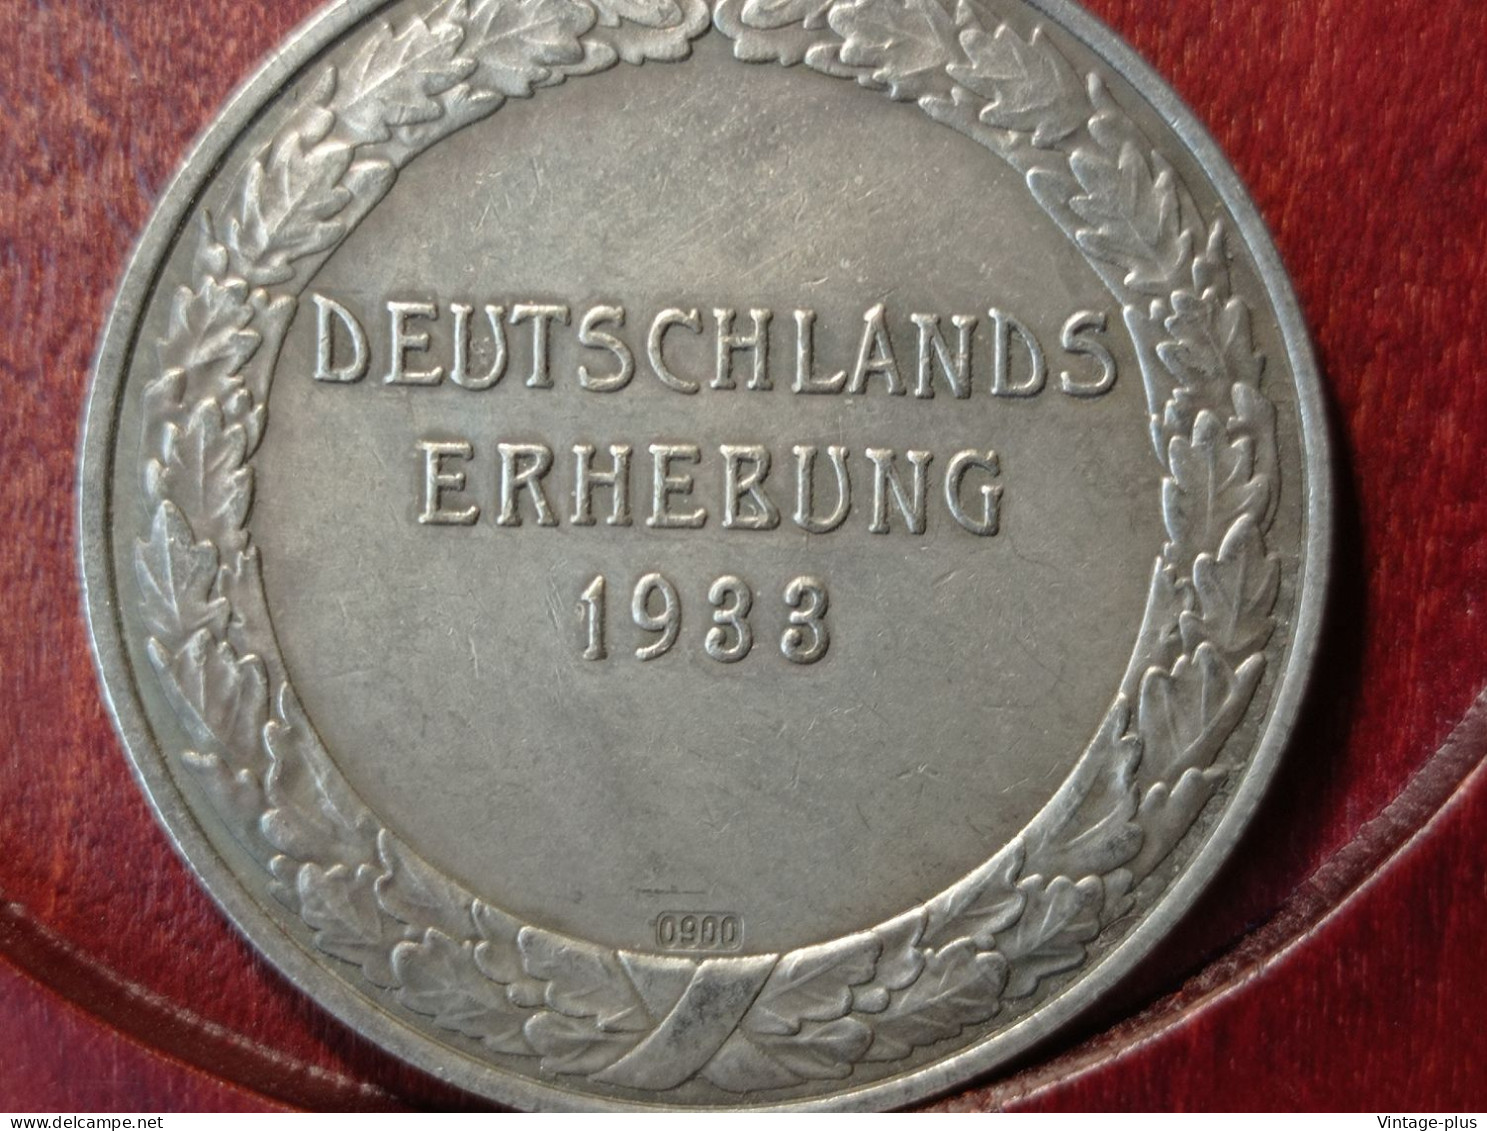 GERMANIA 3° REICH MONETA COMMEMORATIVA DEUTSCHLANDS ERHEBUNG1933 HITLER HINDENBURG  - ALLEMAGNE - DEUTSCHLAND - COD:AB8 - Other - Europe